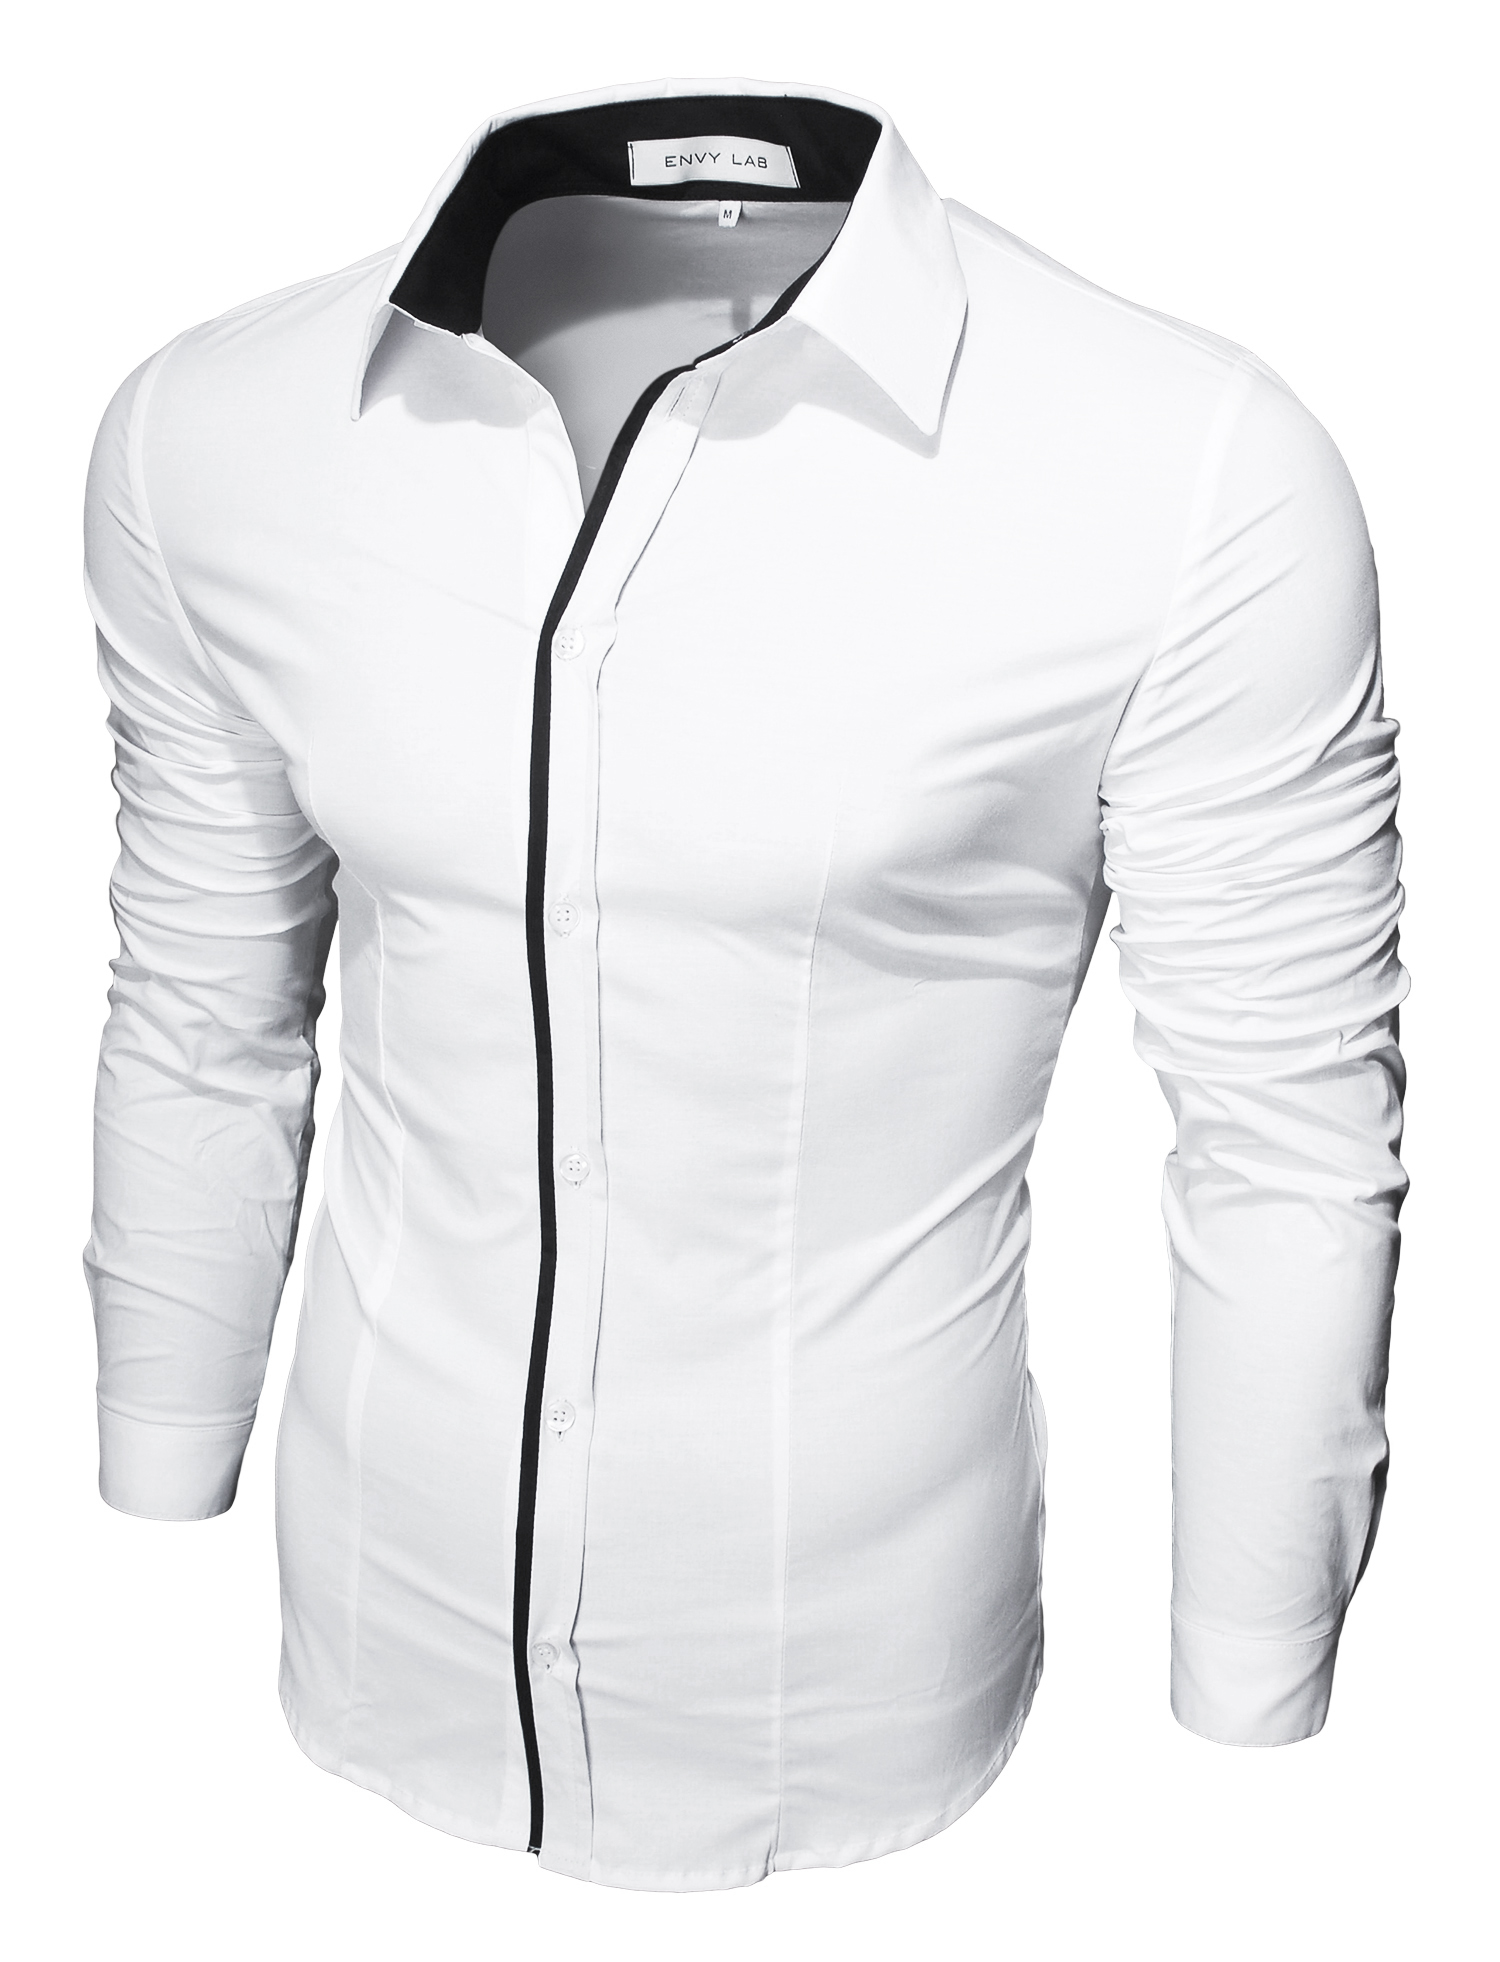 картинка товара рубашка black line white в магазине Envy LAB